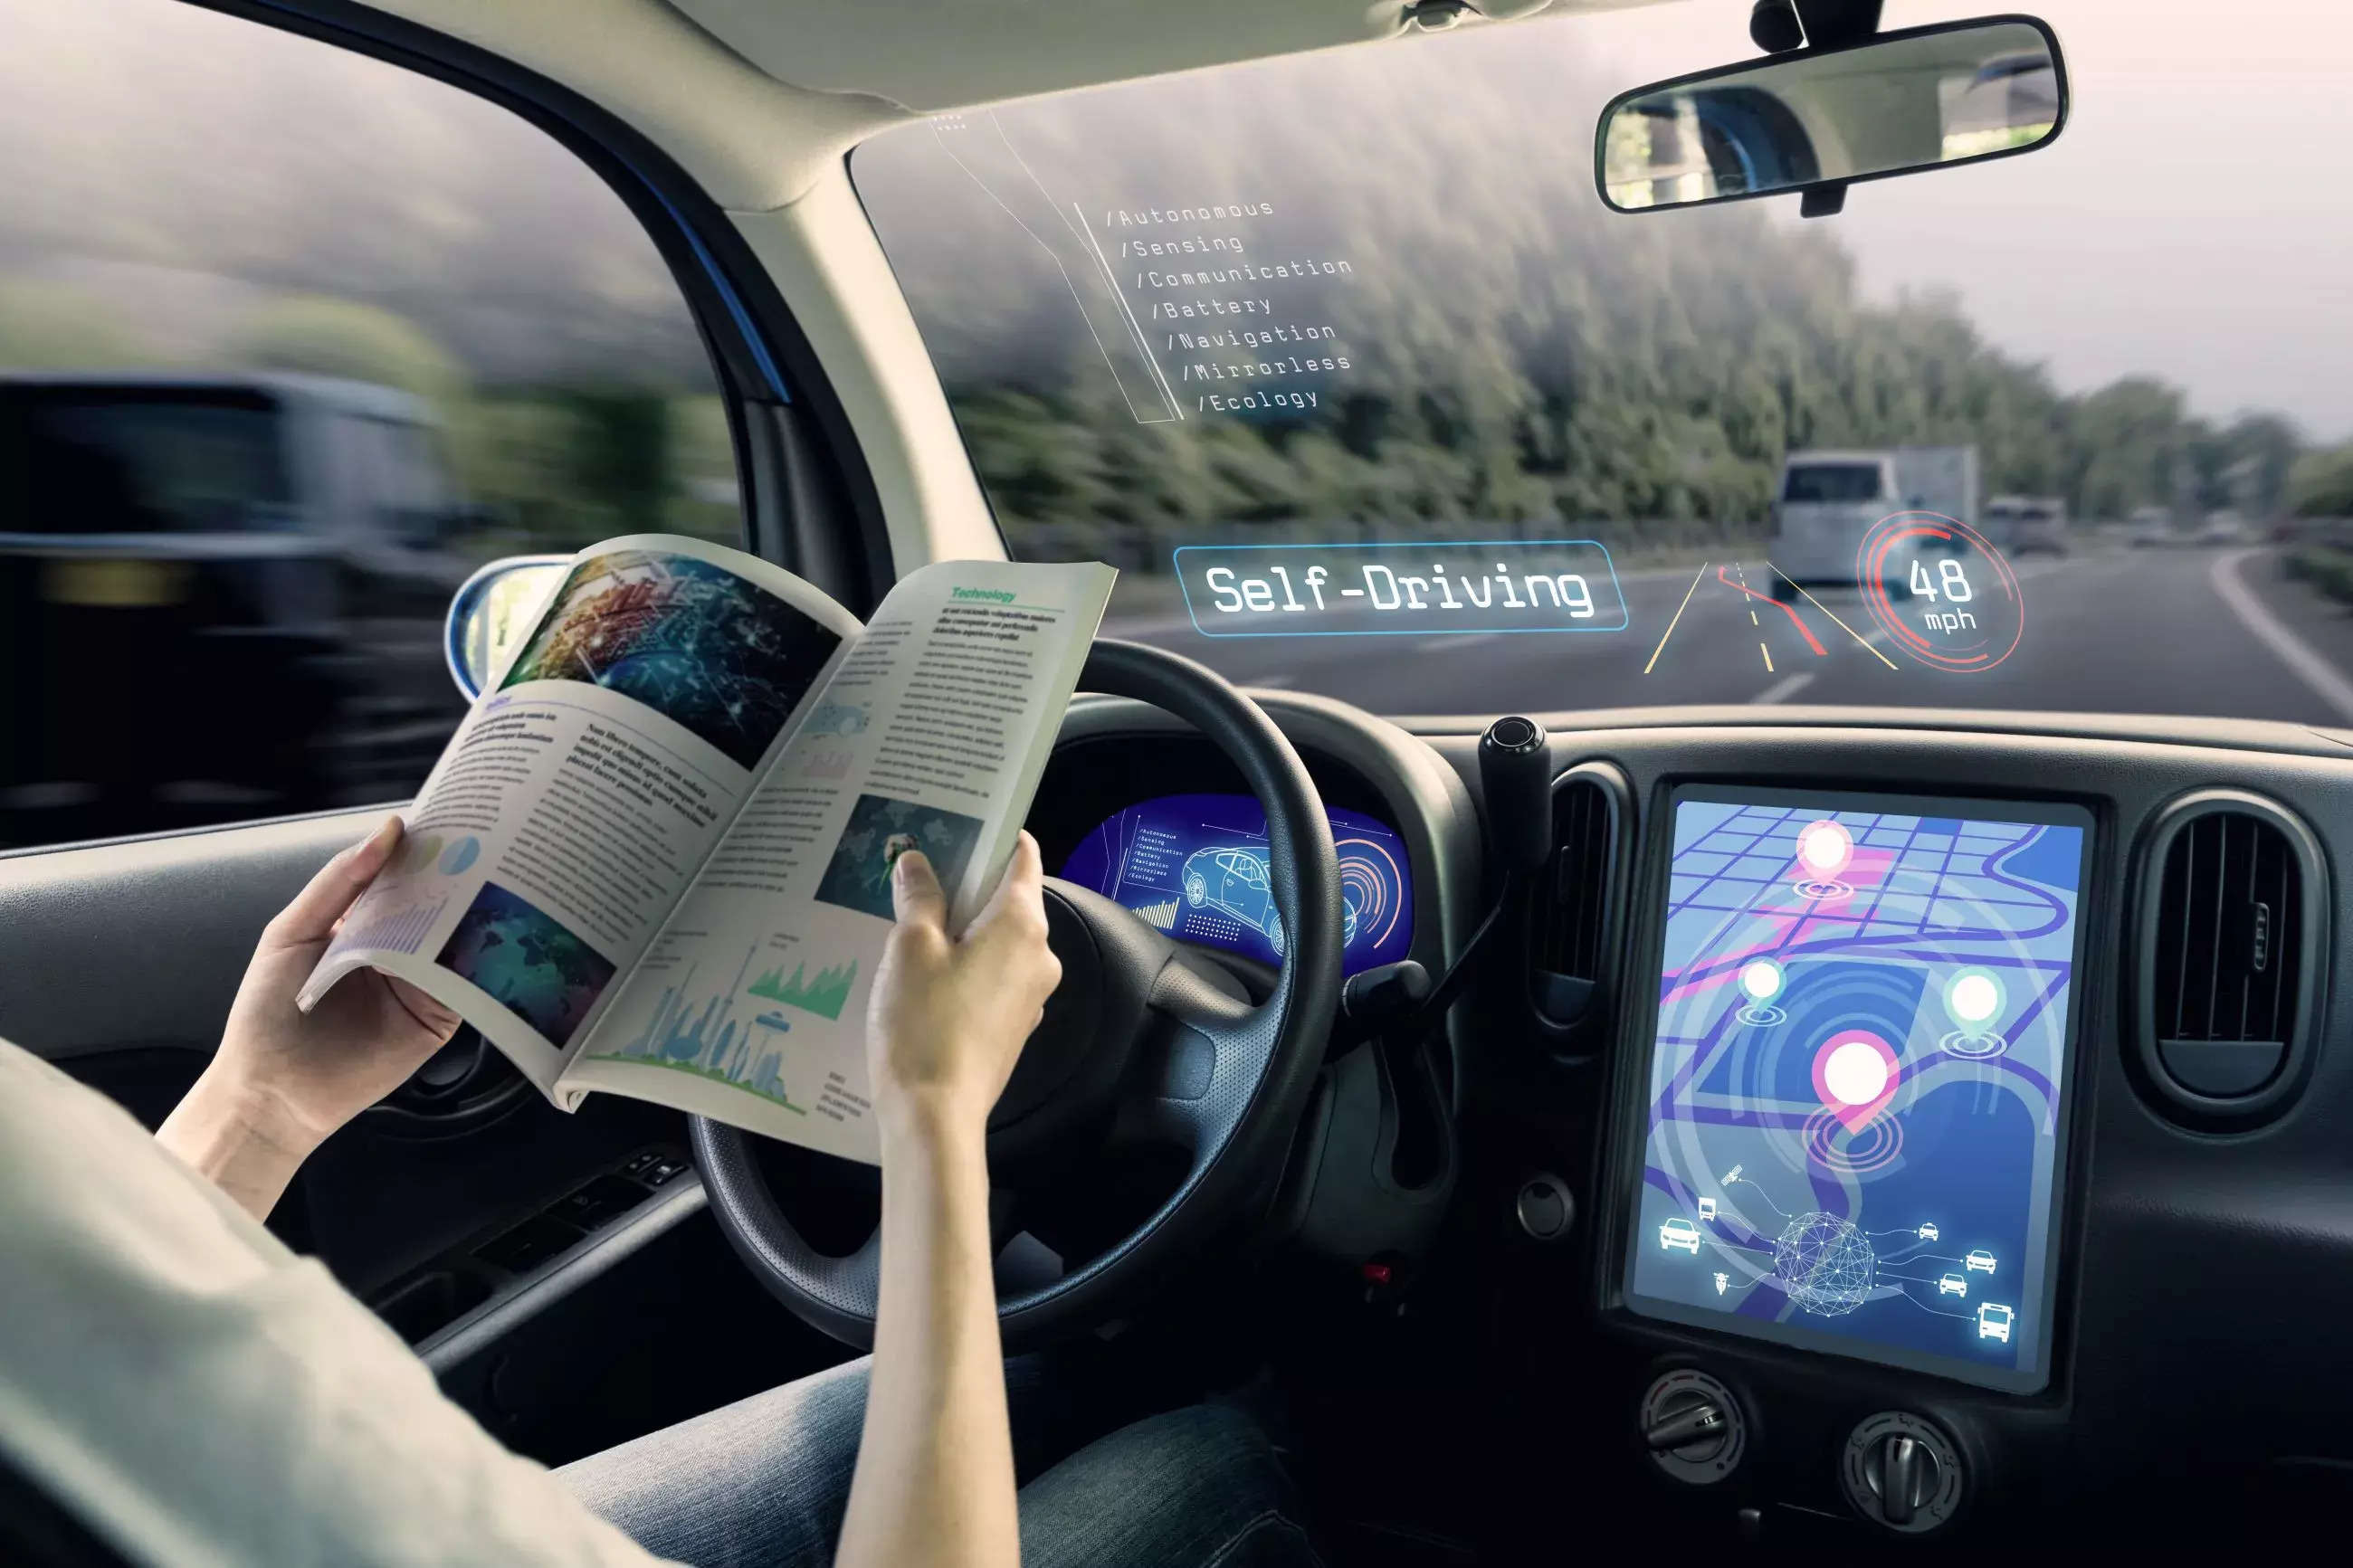 Argo Ai: Self-driving cars face uncertain path to U.S. deployment, ET Auto